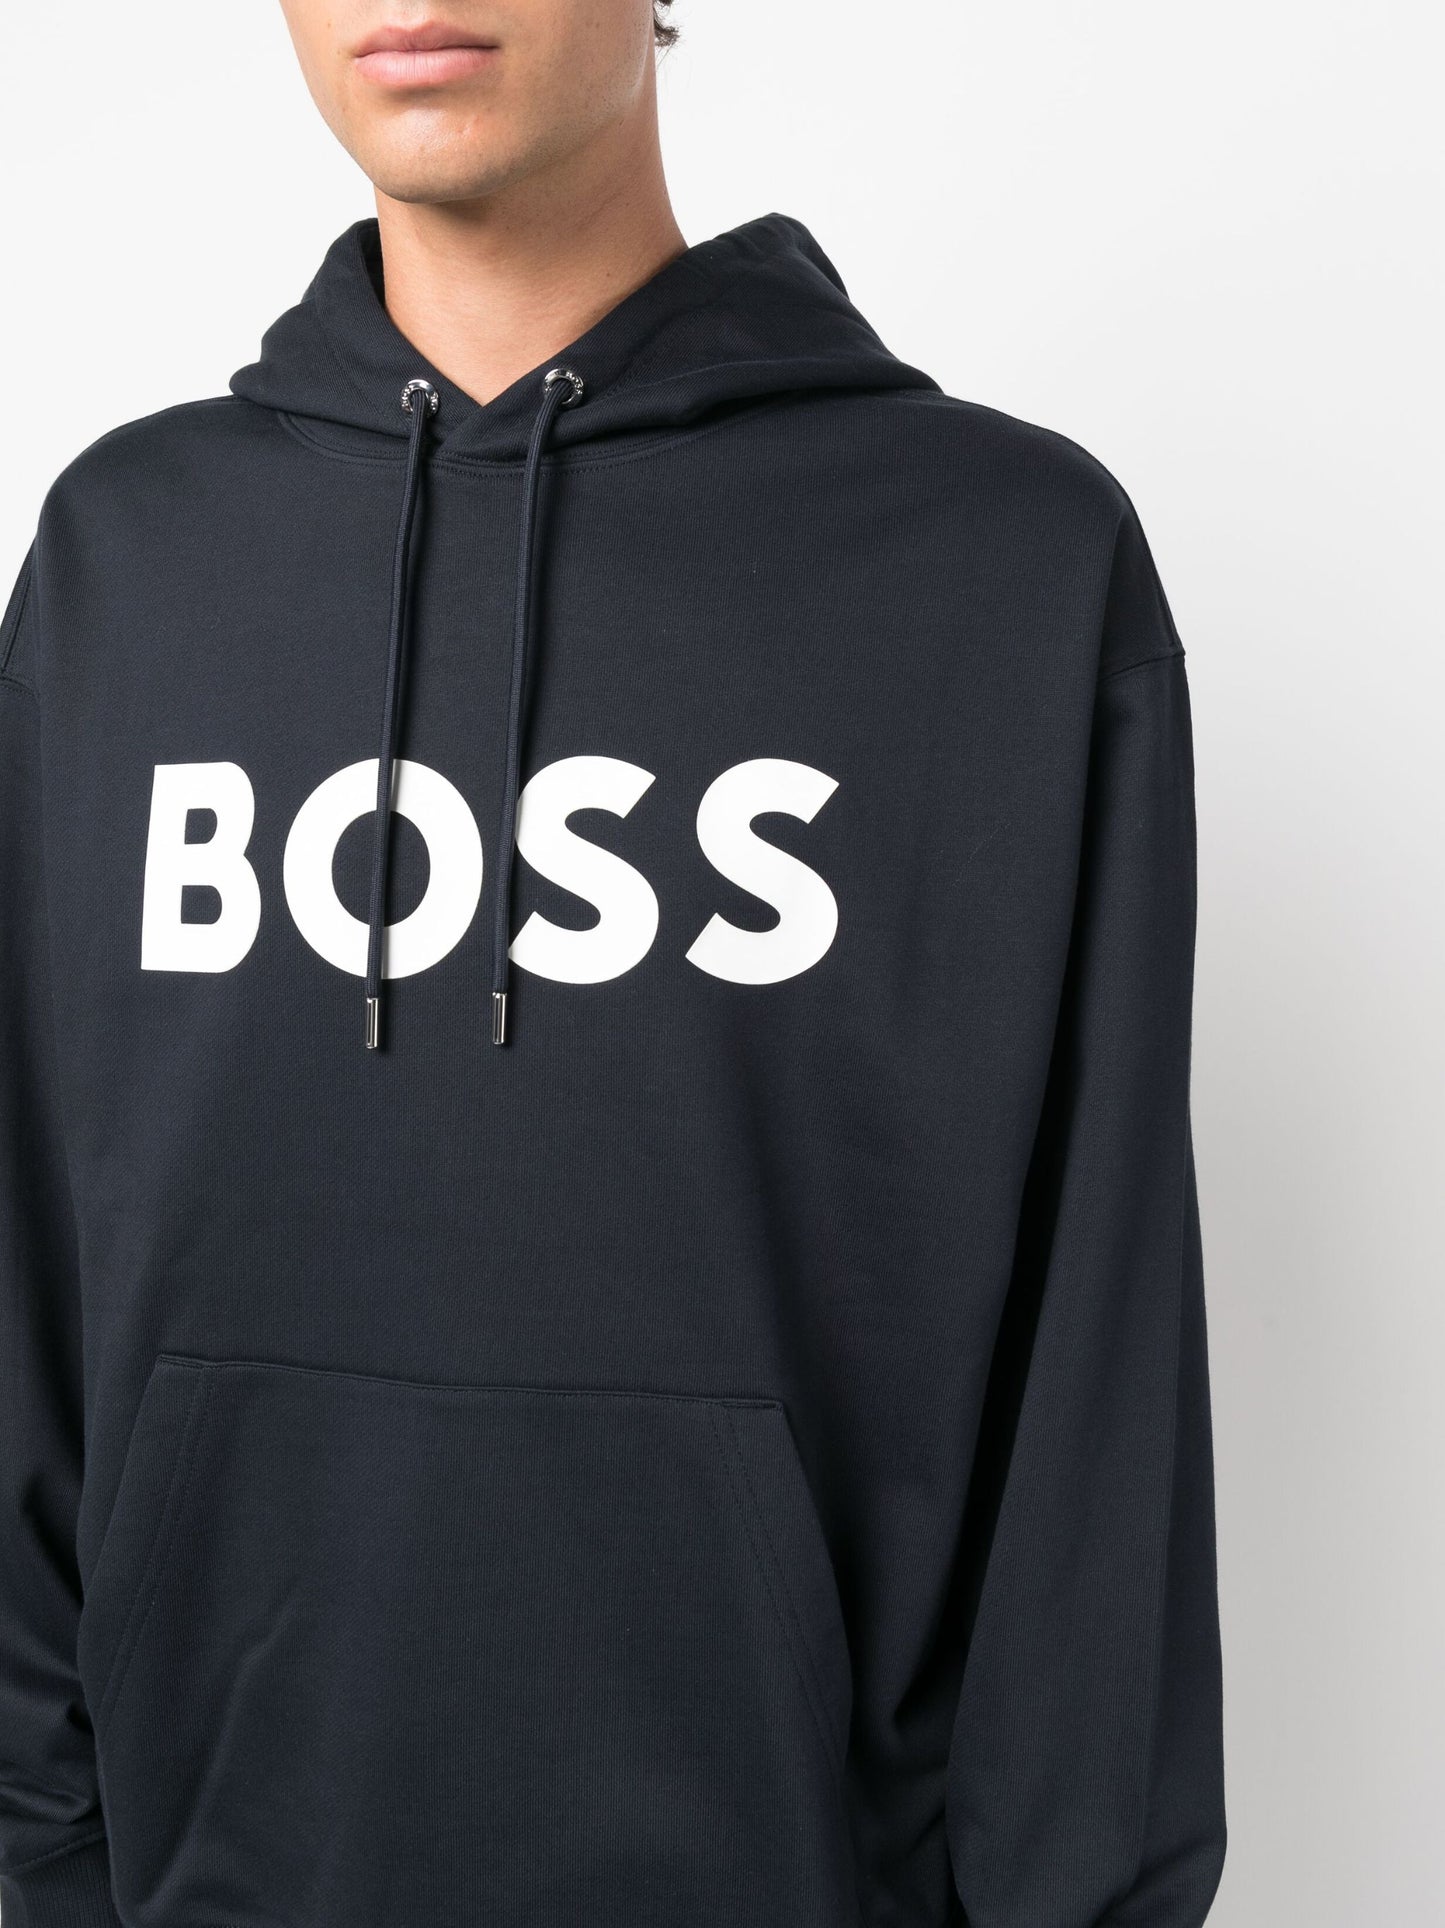 Hugo Boss Men's Sullivan Hoodie Sweatshirt, Navy